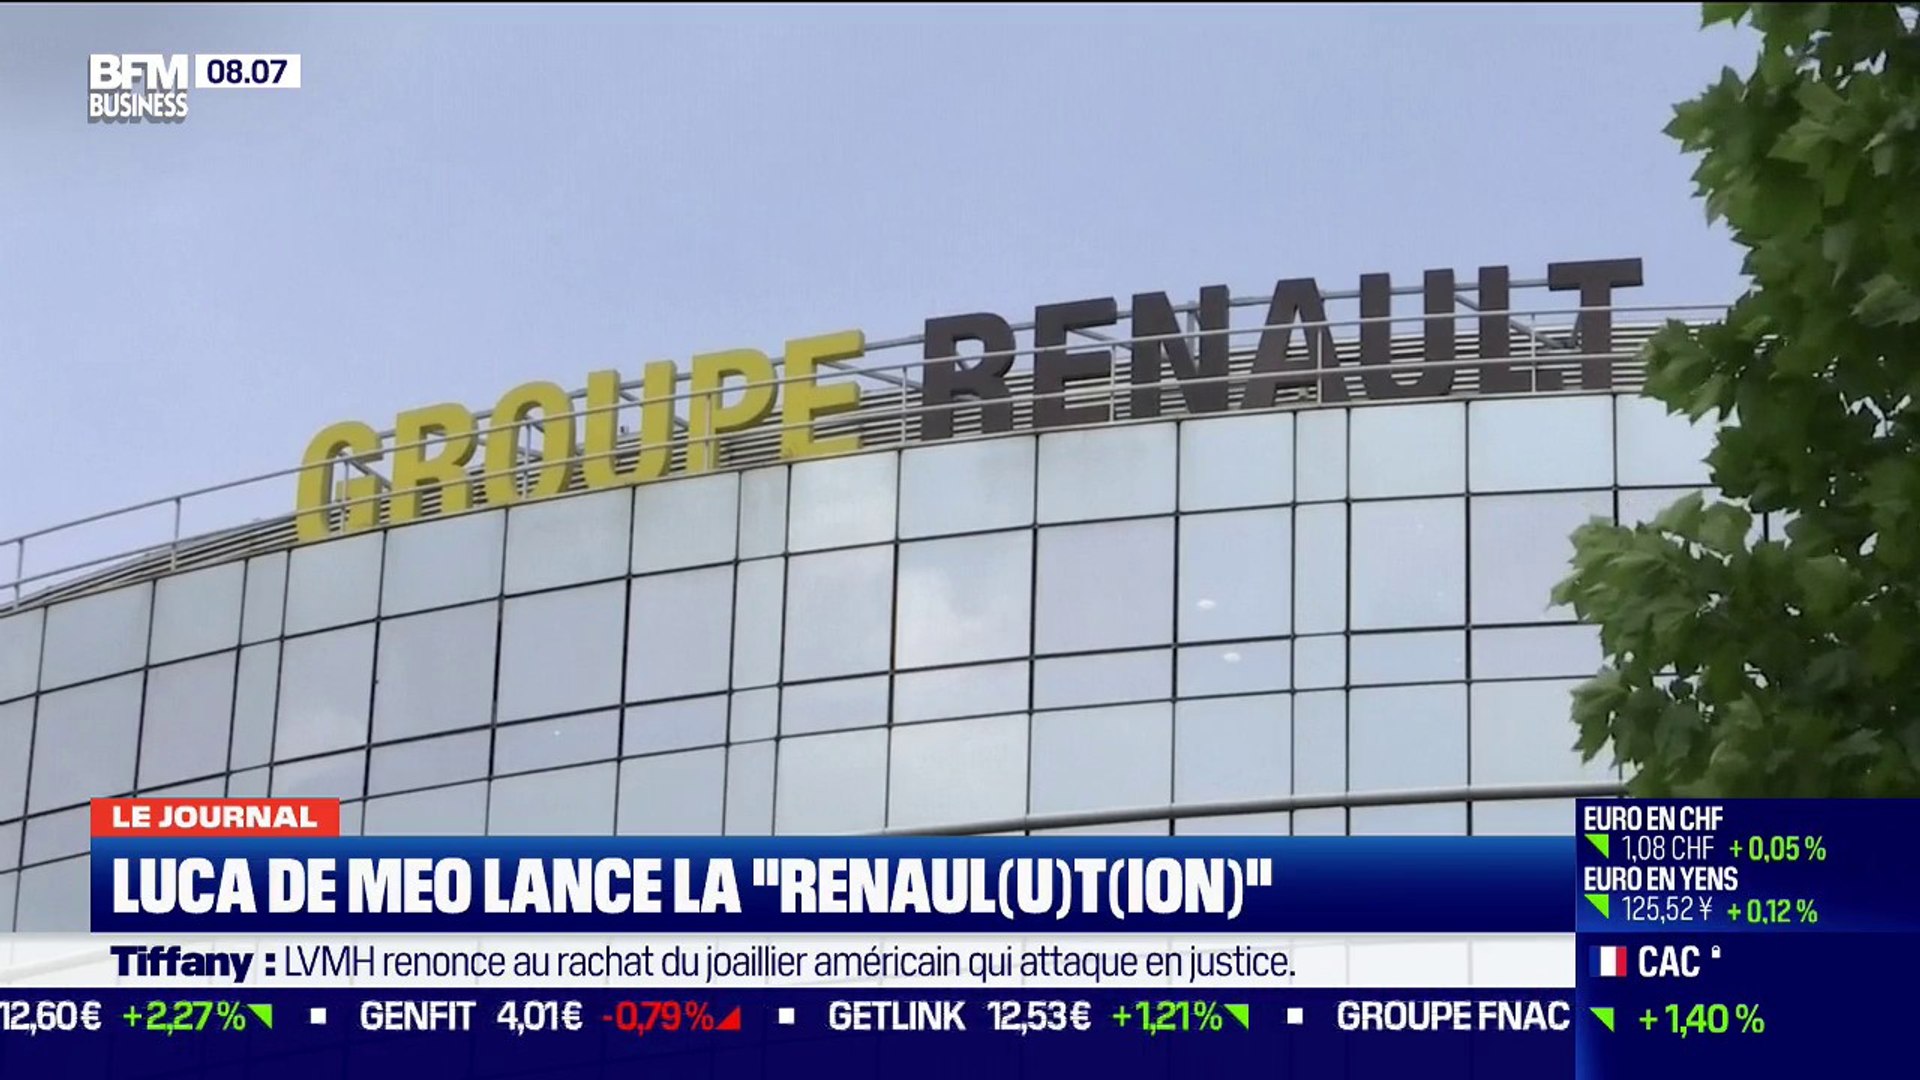 Le nouveau plan Renault : une « Renaulution » pour les actionnaires !